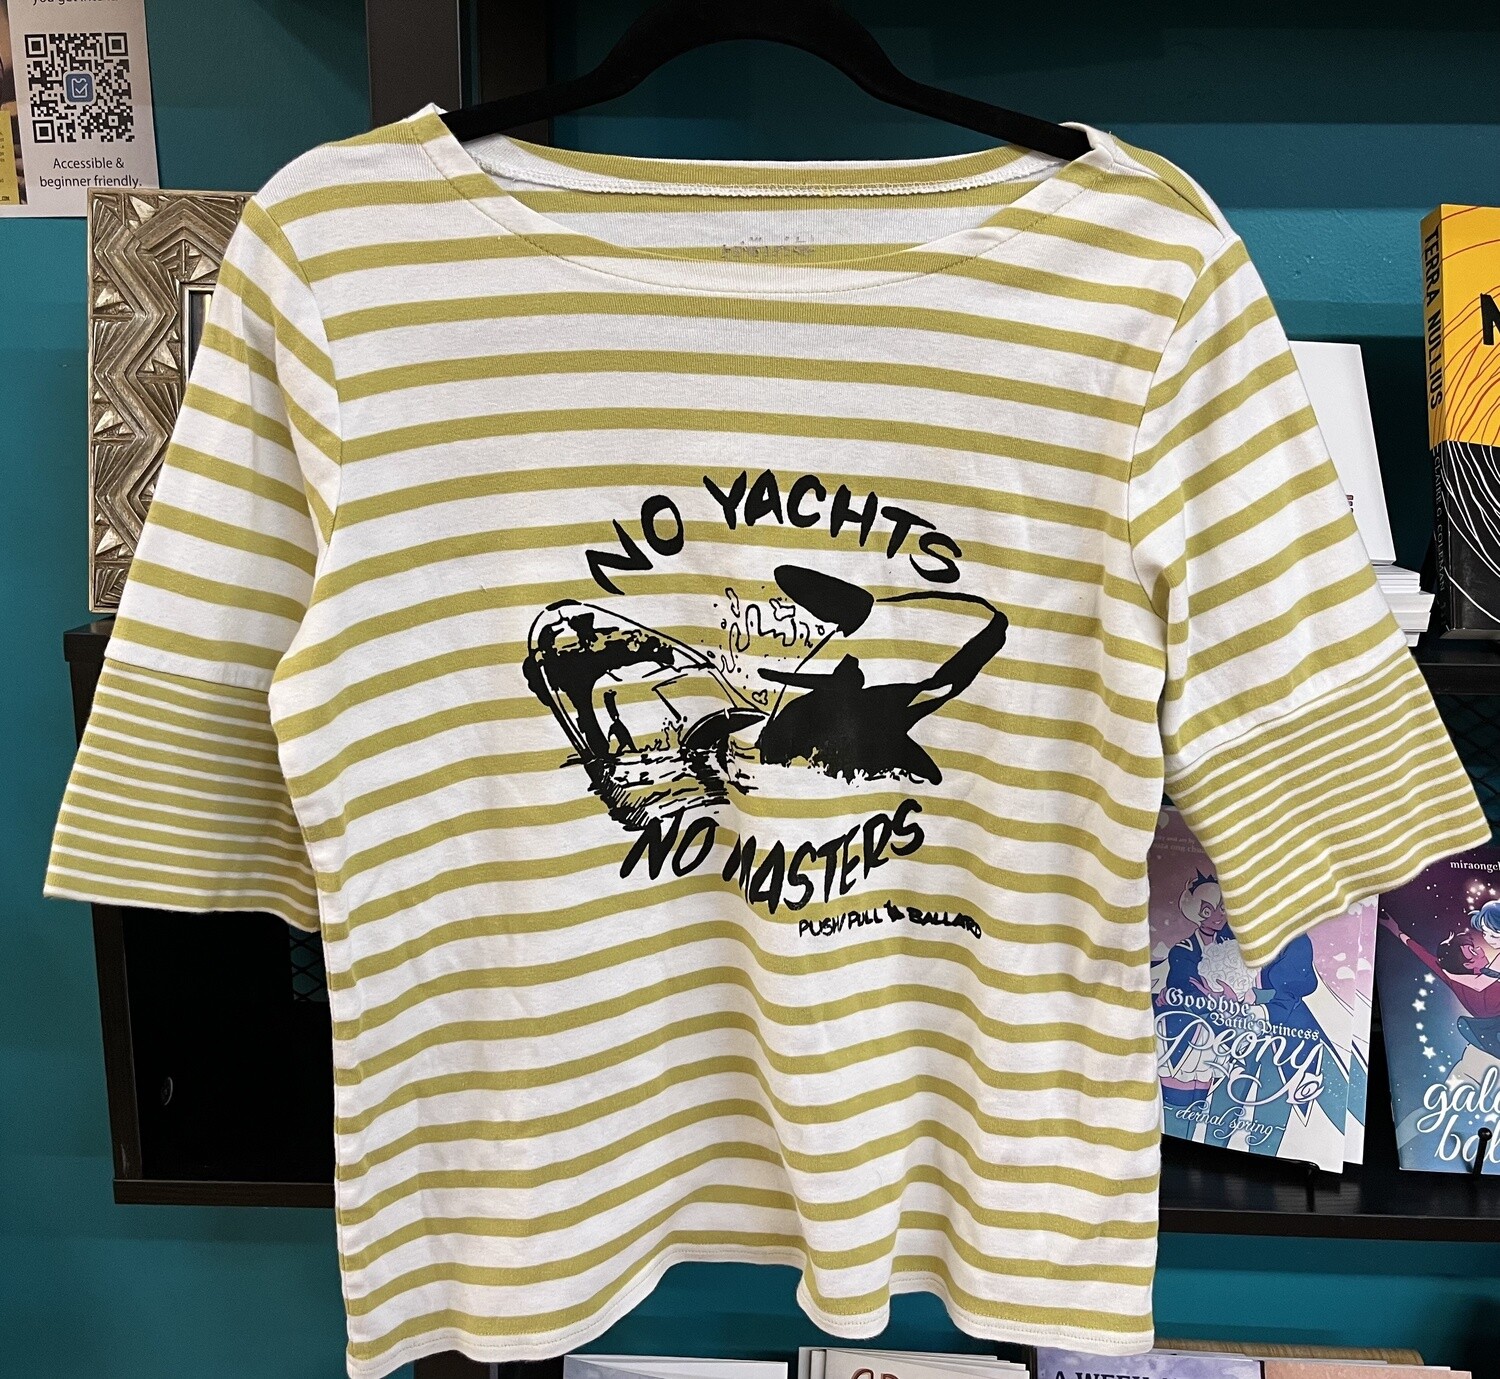 NO YACHTS, NO MASTERS - Small, striped sailor cut shirt by Push/Pull